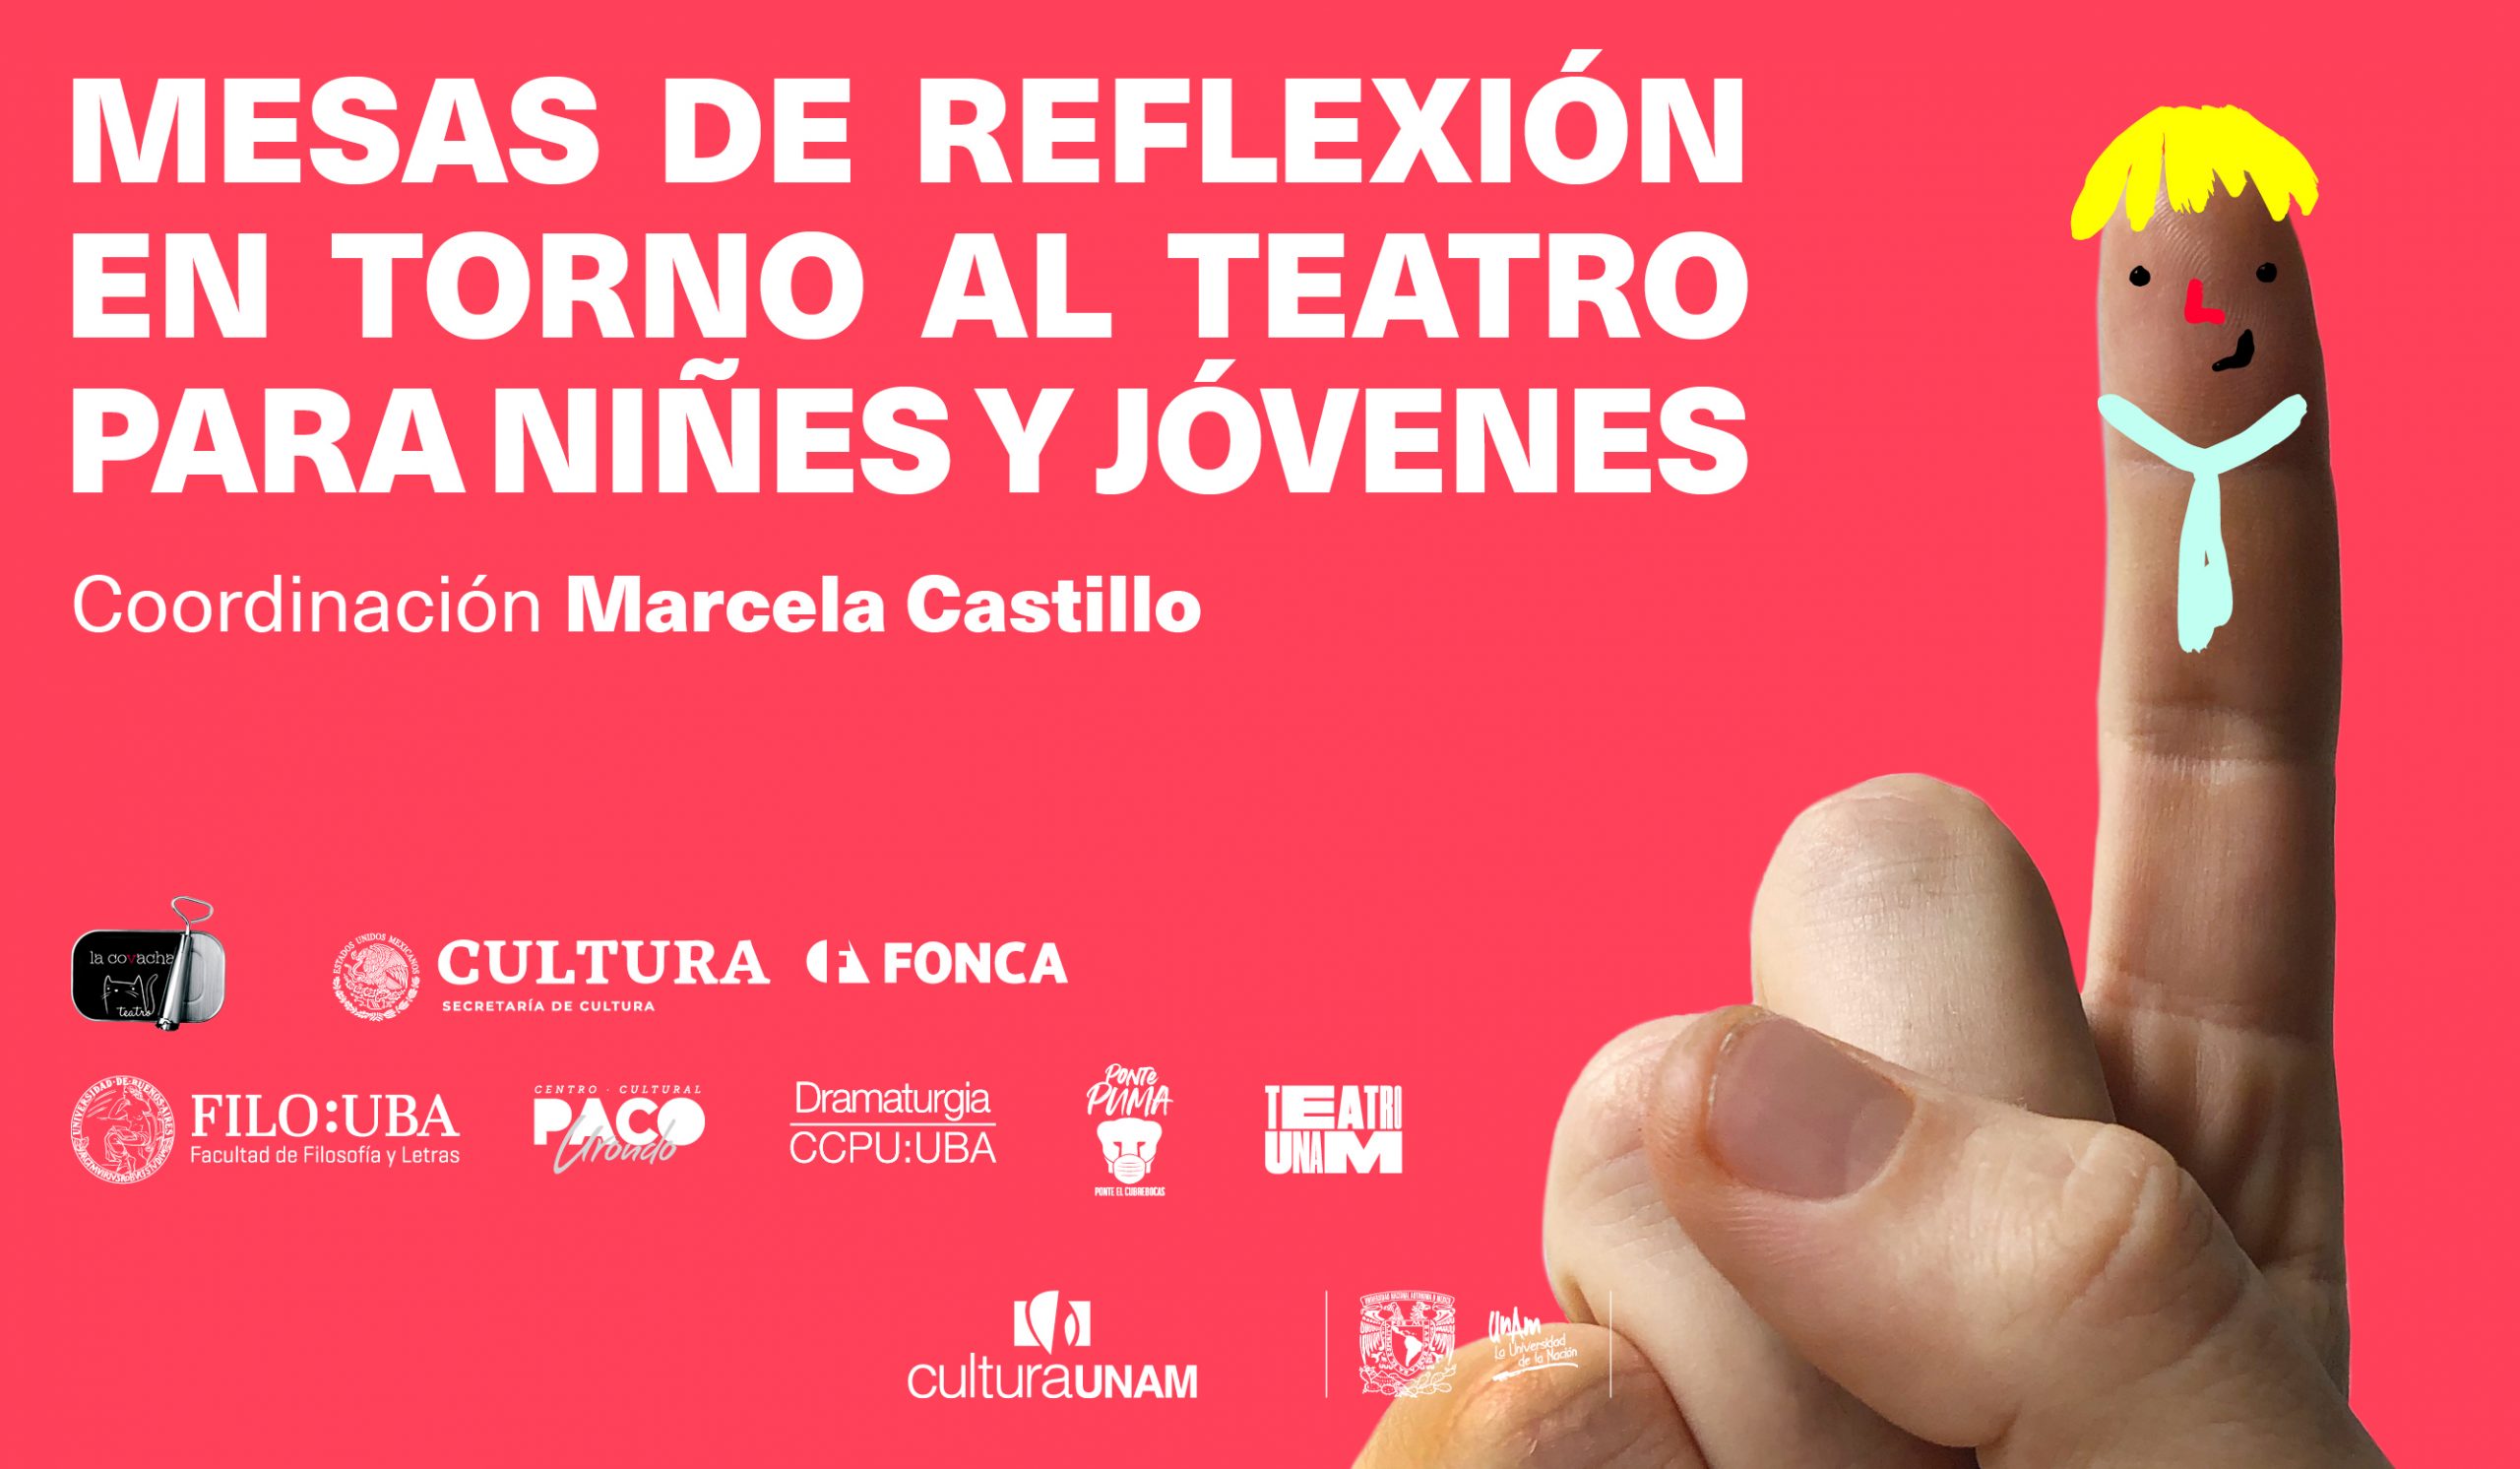 mesas de reflexion en torno al teatro para niñes y jóvenes - Teatro UNAM